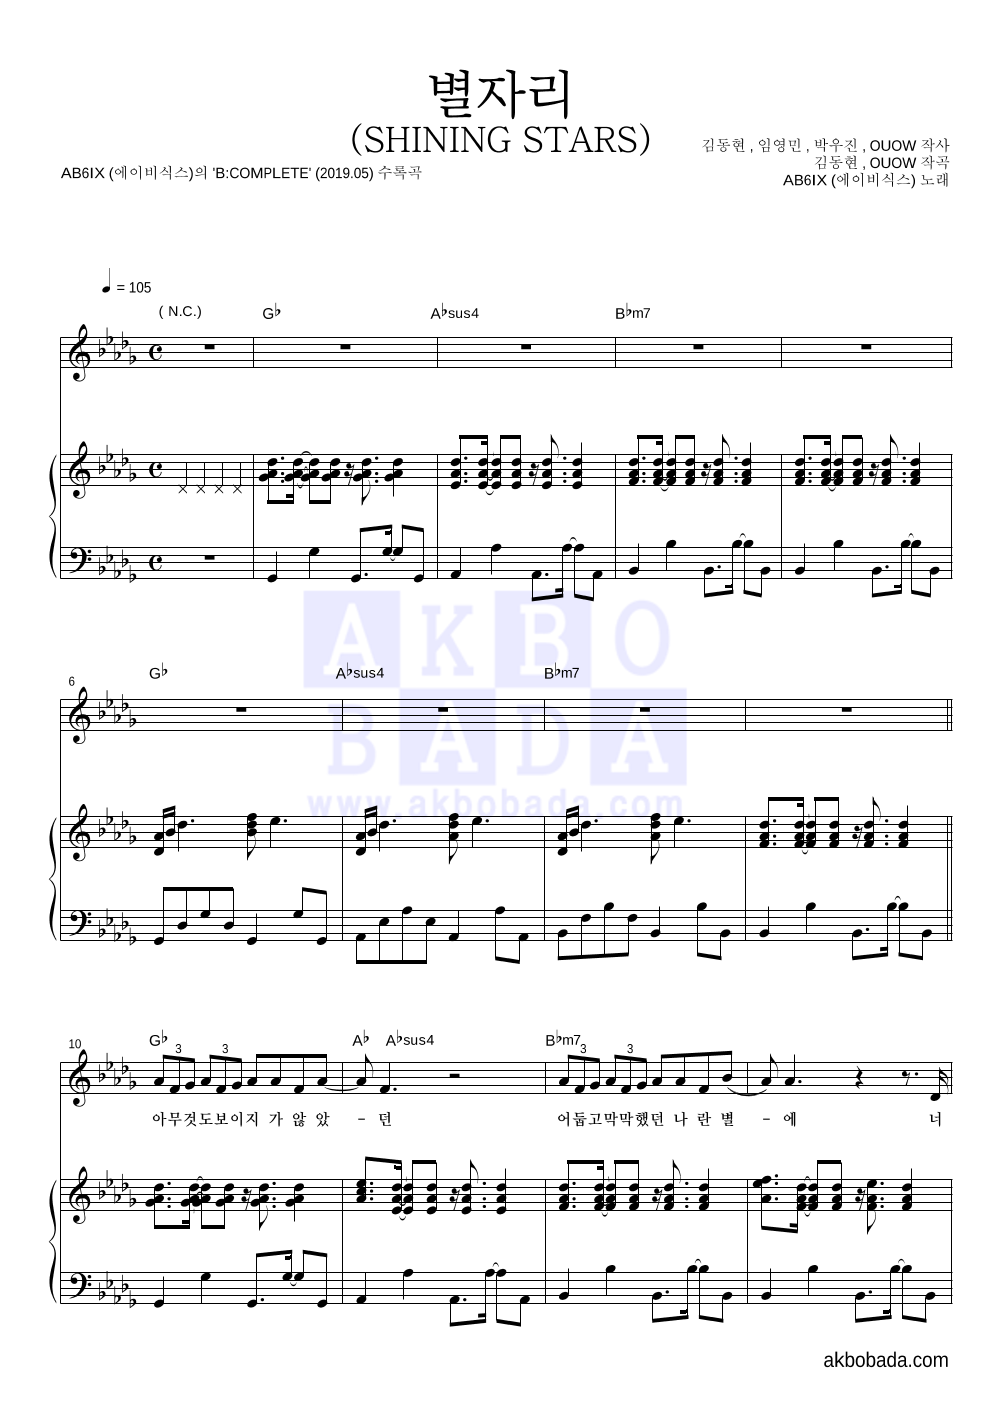 에이비식스 - 별자리 (SHINING STARS) 피아노 3단 악보 